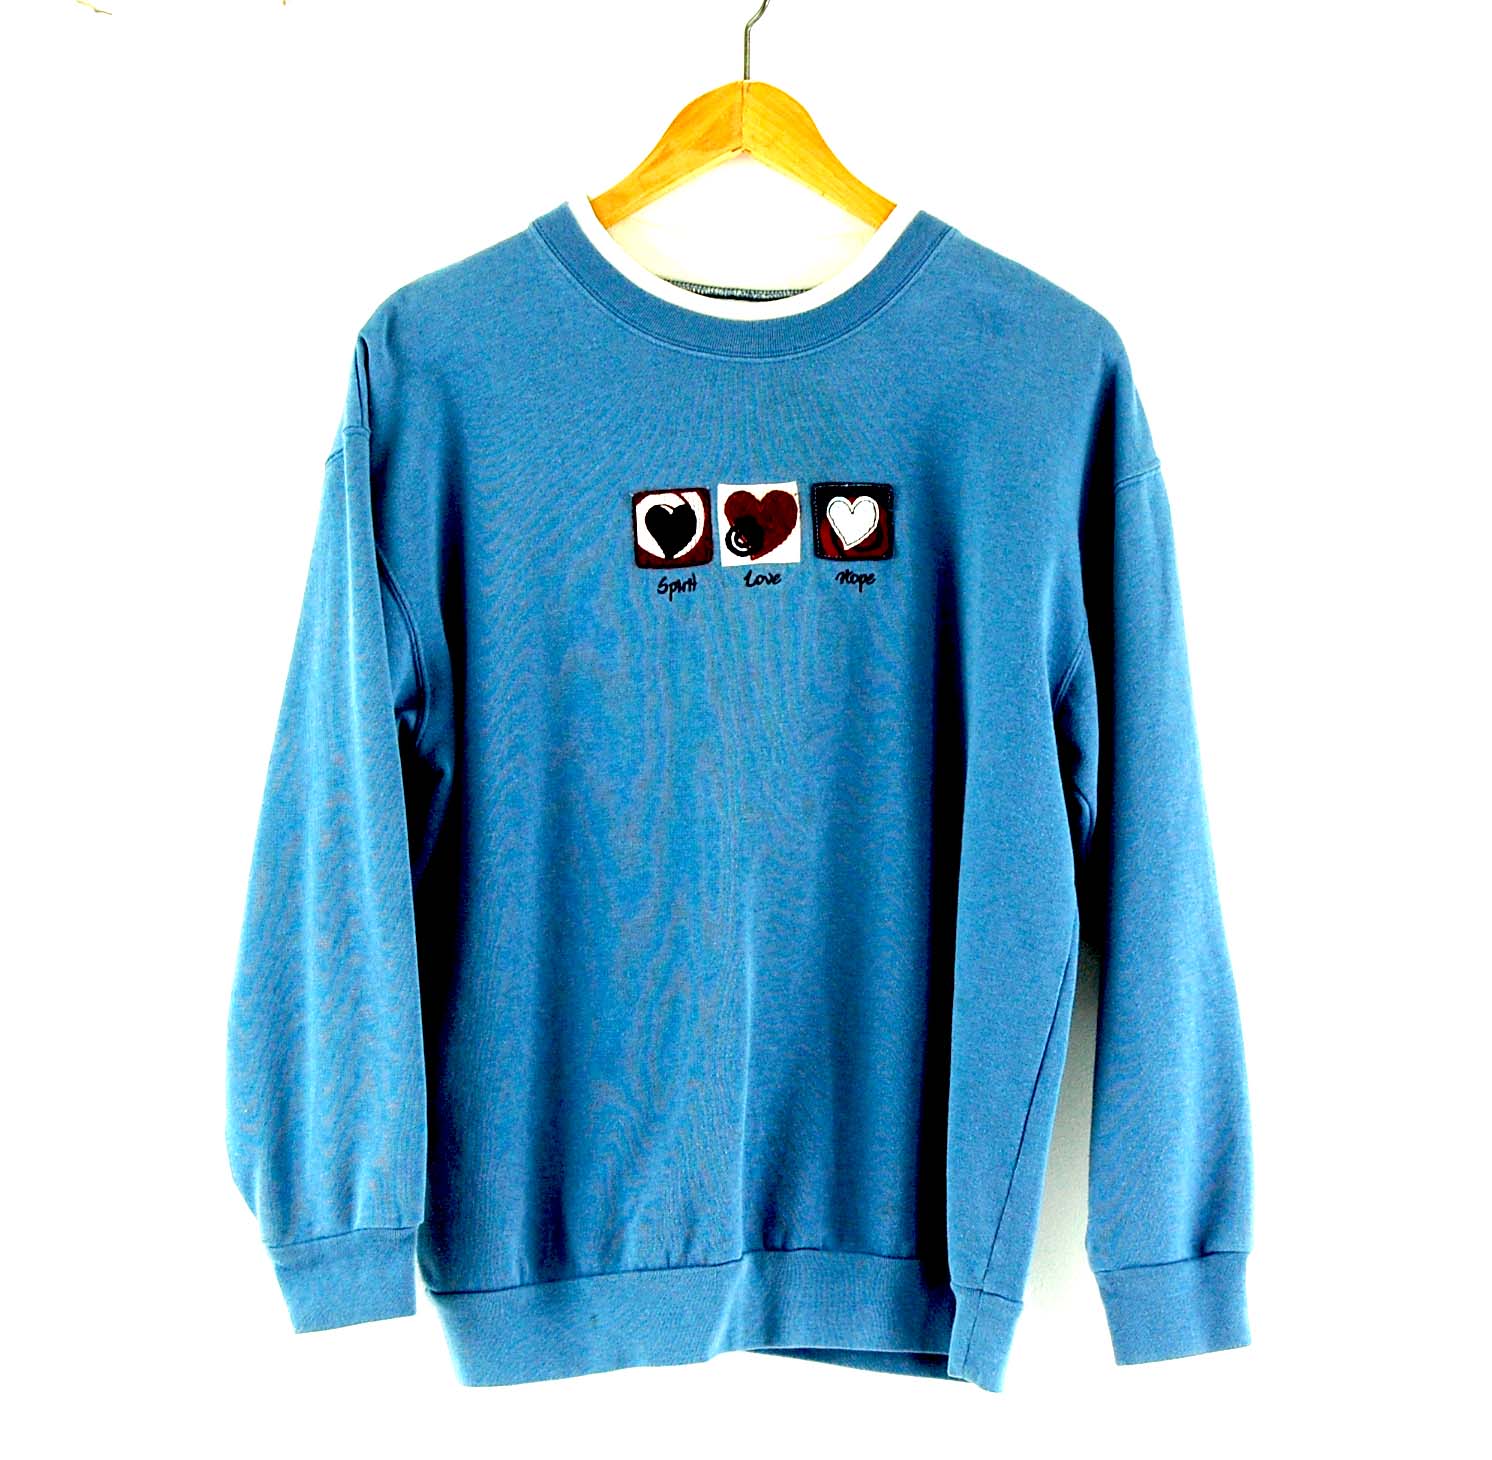 Blue Crew Neck Sweatshirt t - UK S - Blue 17 Vintage Clothing